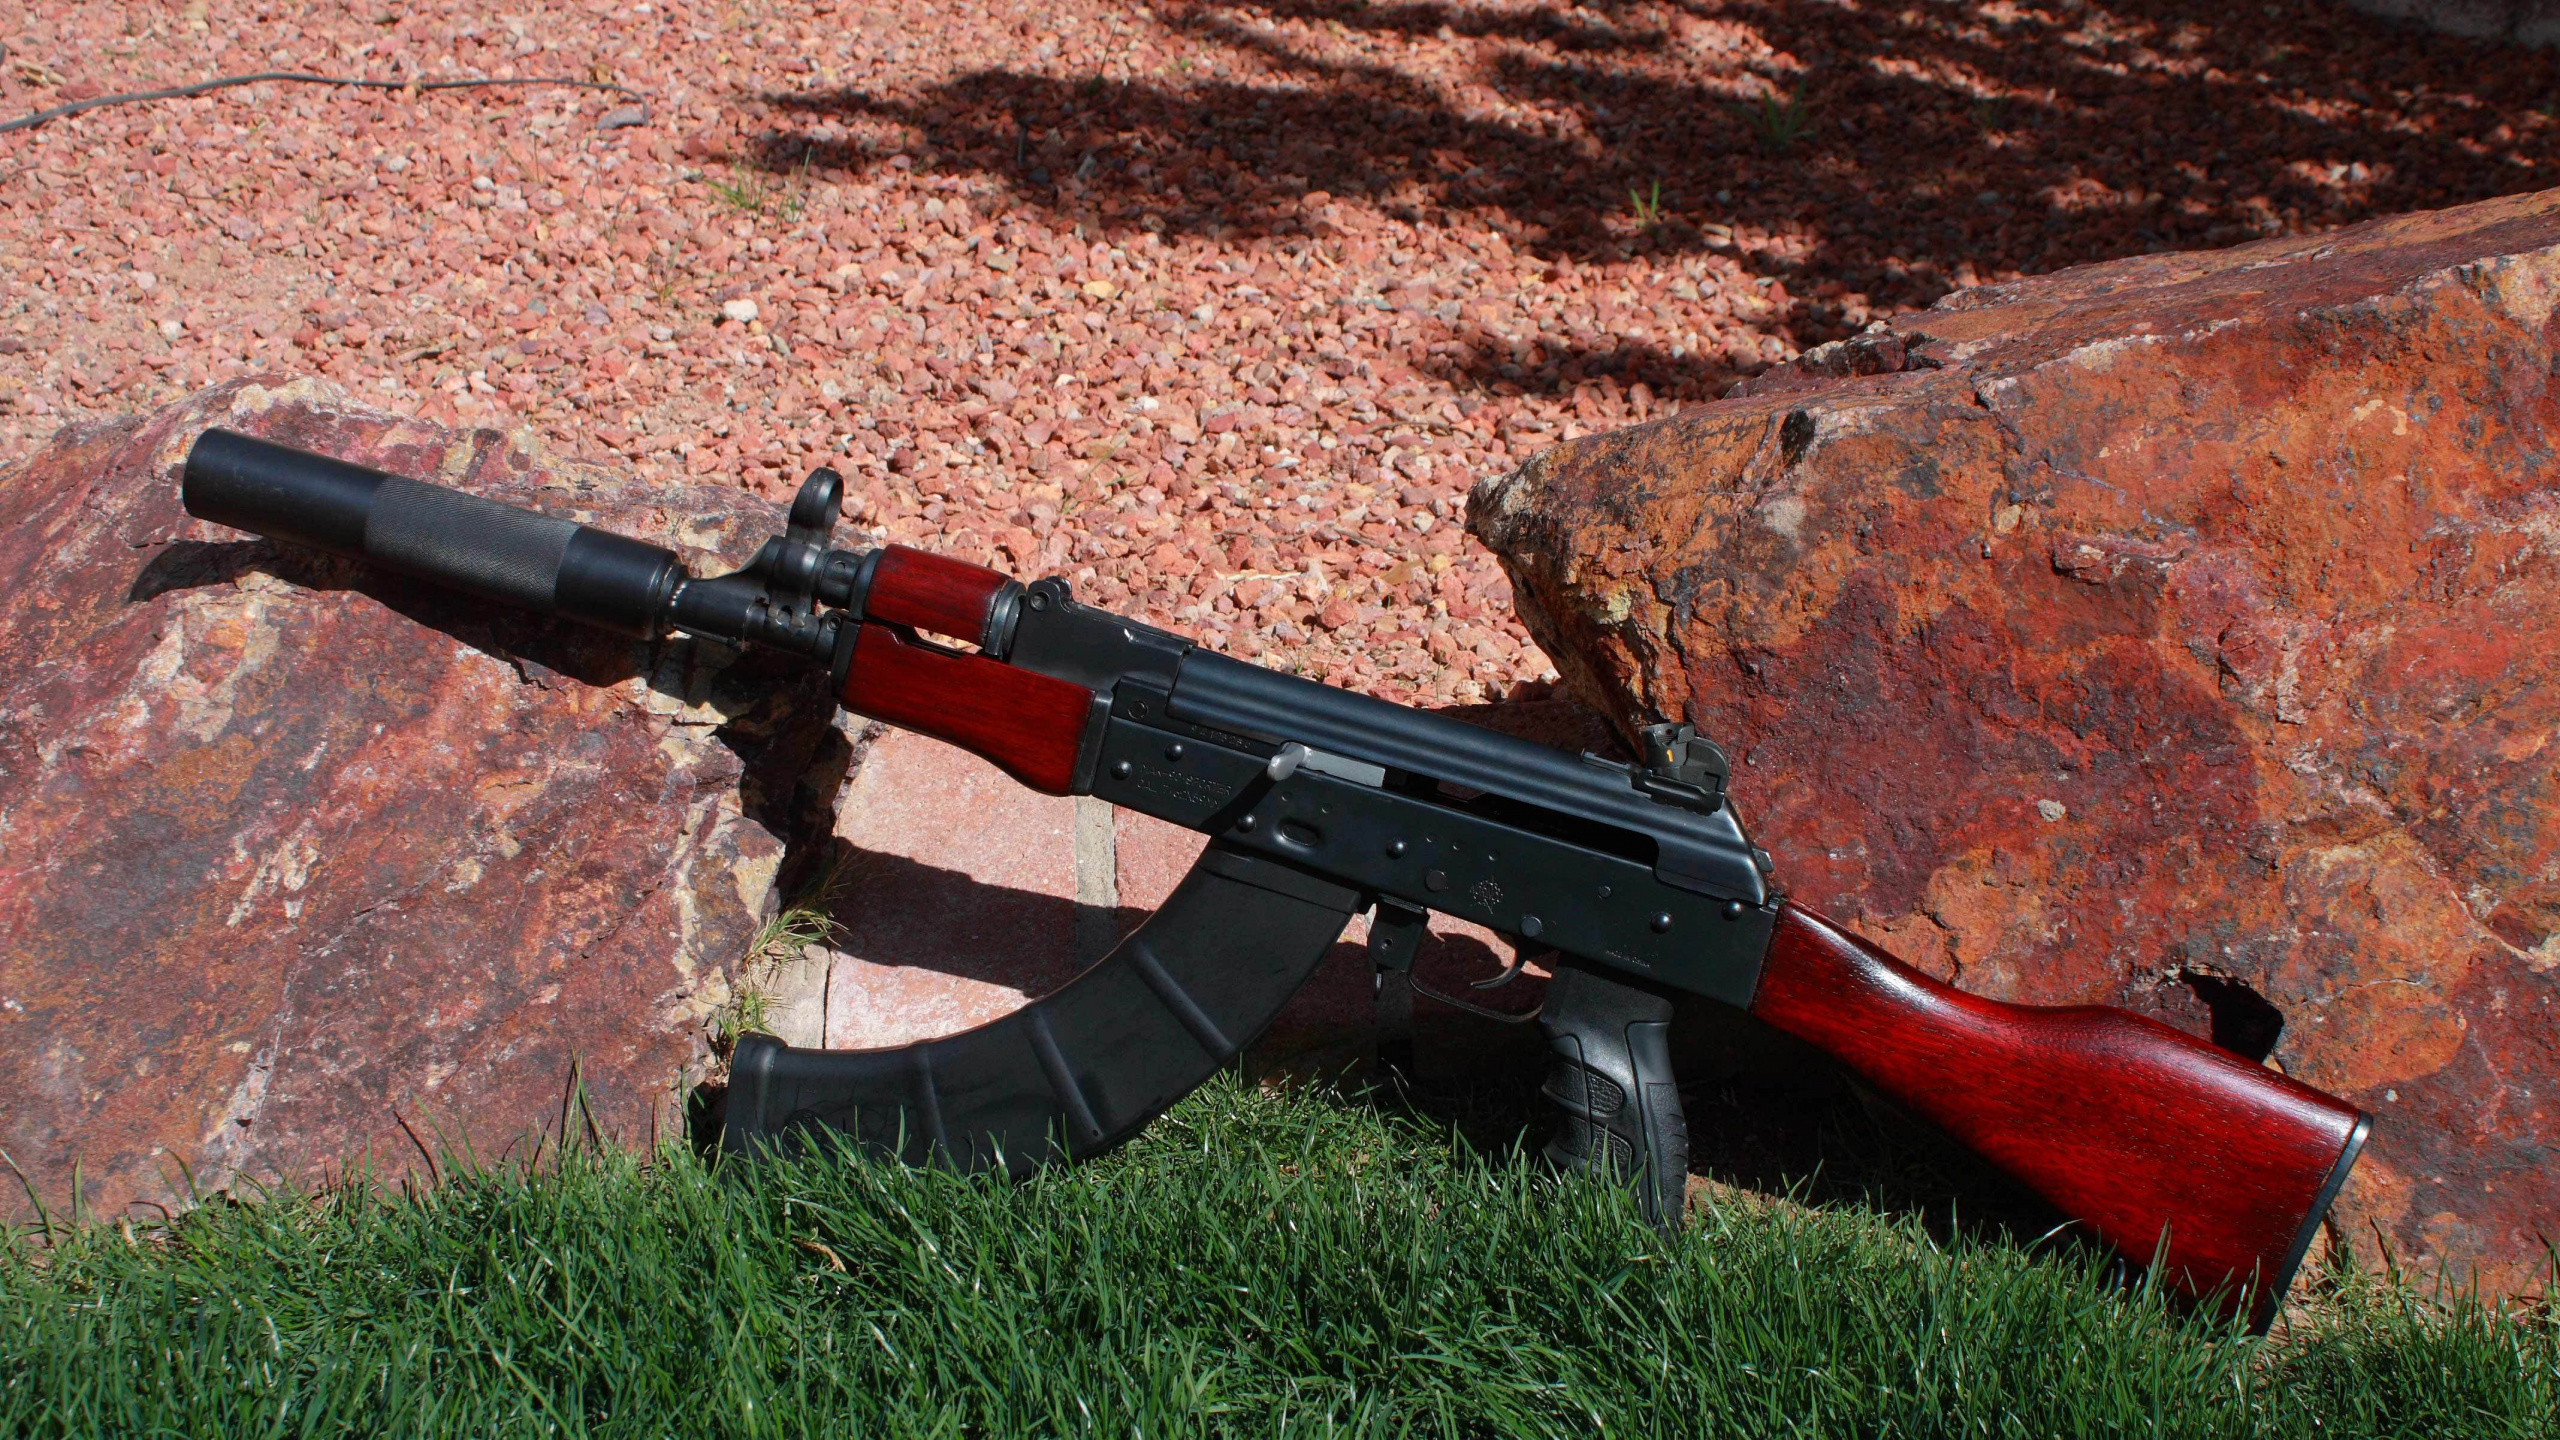 Ak-74, Arma, Rifle, Pistola de Aire, Gatillo. Wallpaper in 2560x1440 Resolution